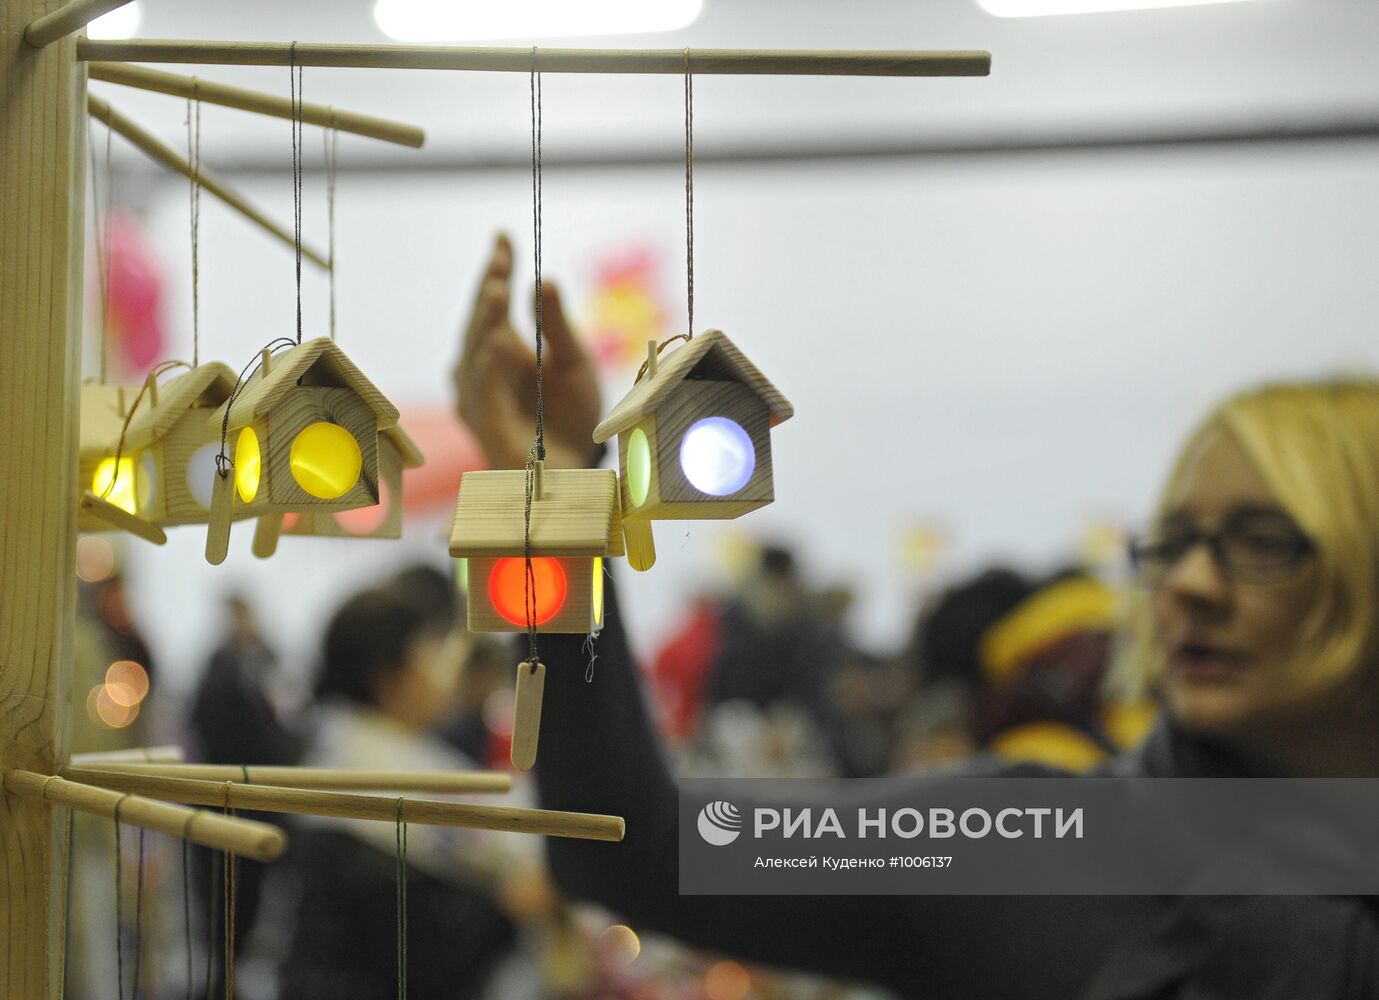 Благотворительная ярмарка "Душевный базар" в Москве